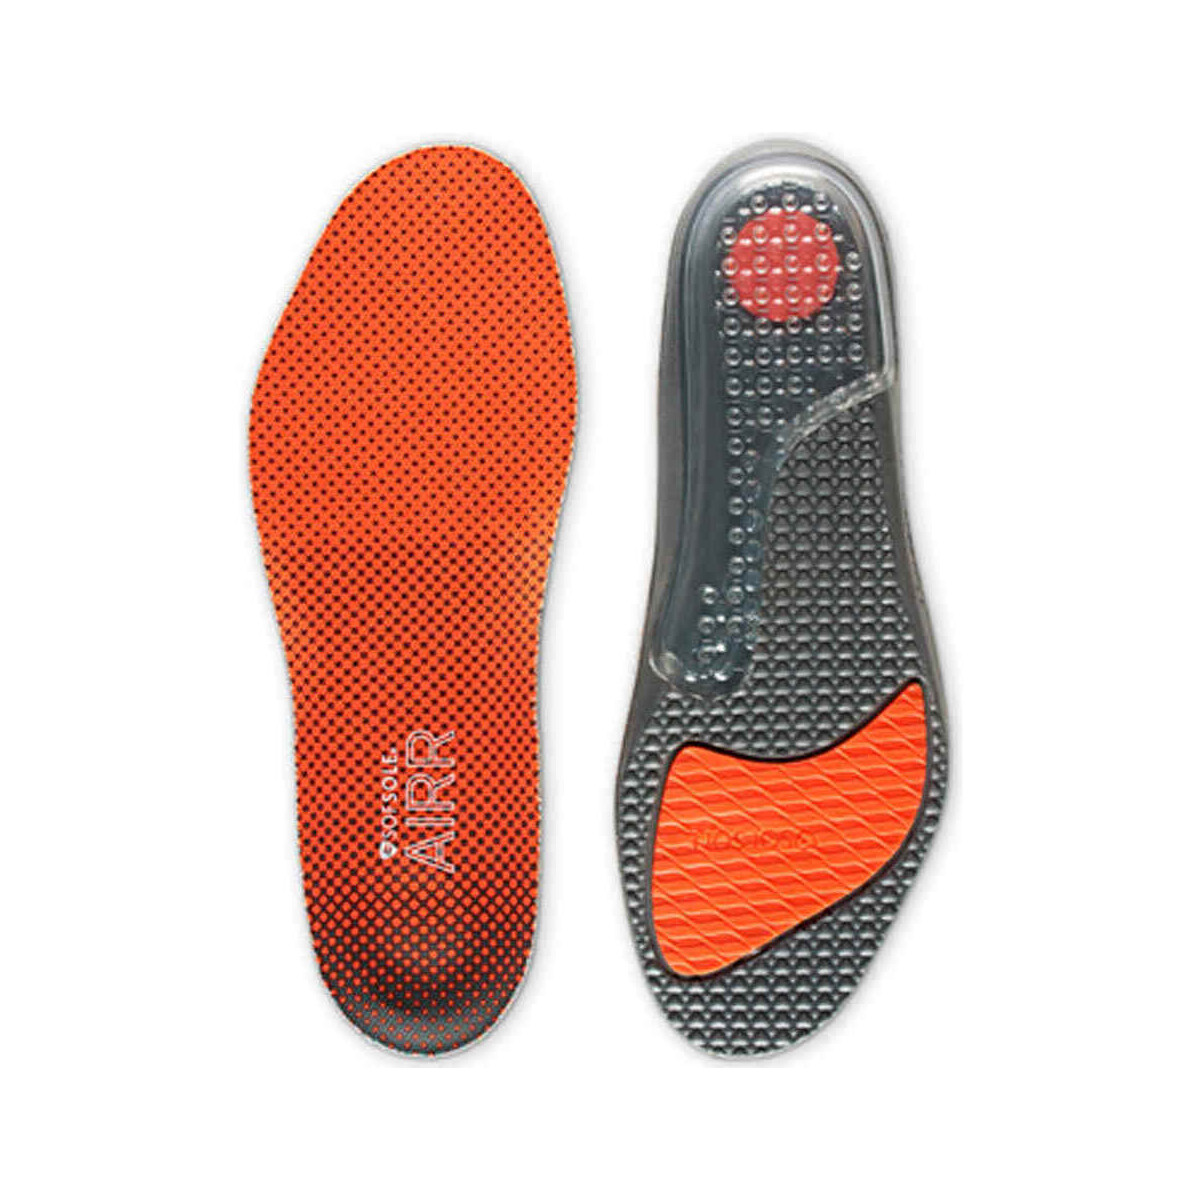 Accesorios Complementos de zapatos Sof Sole AIRR Multicolor